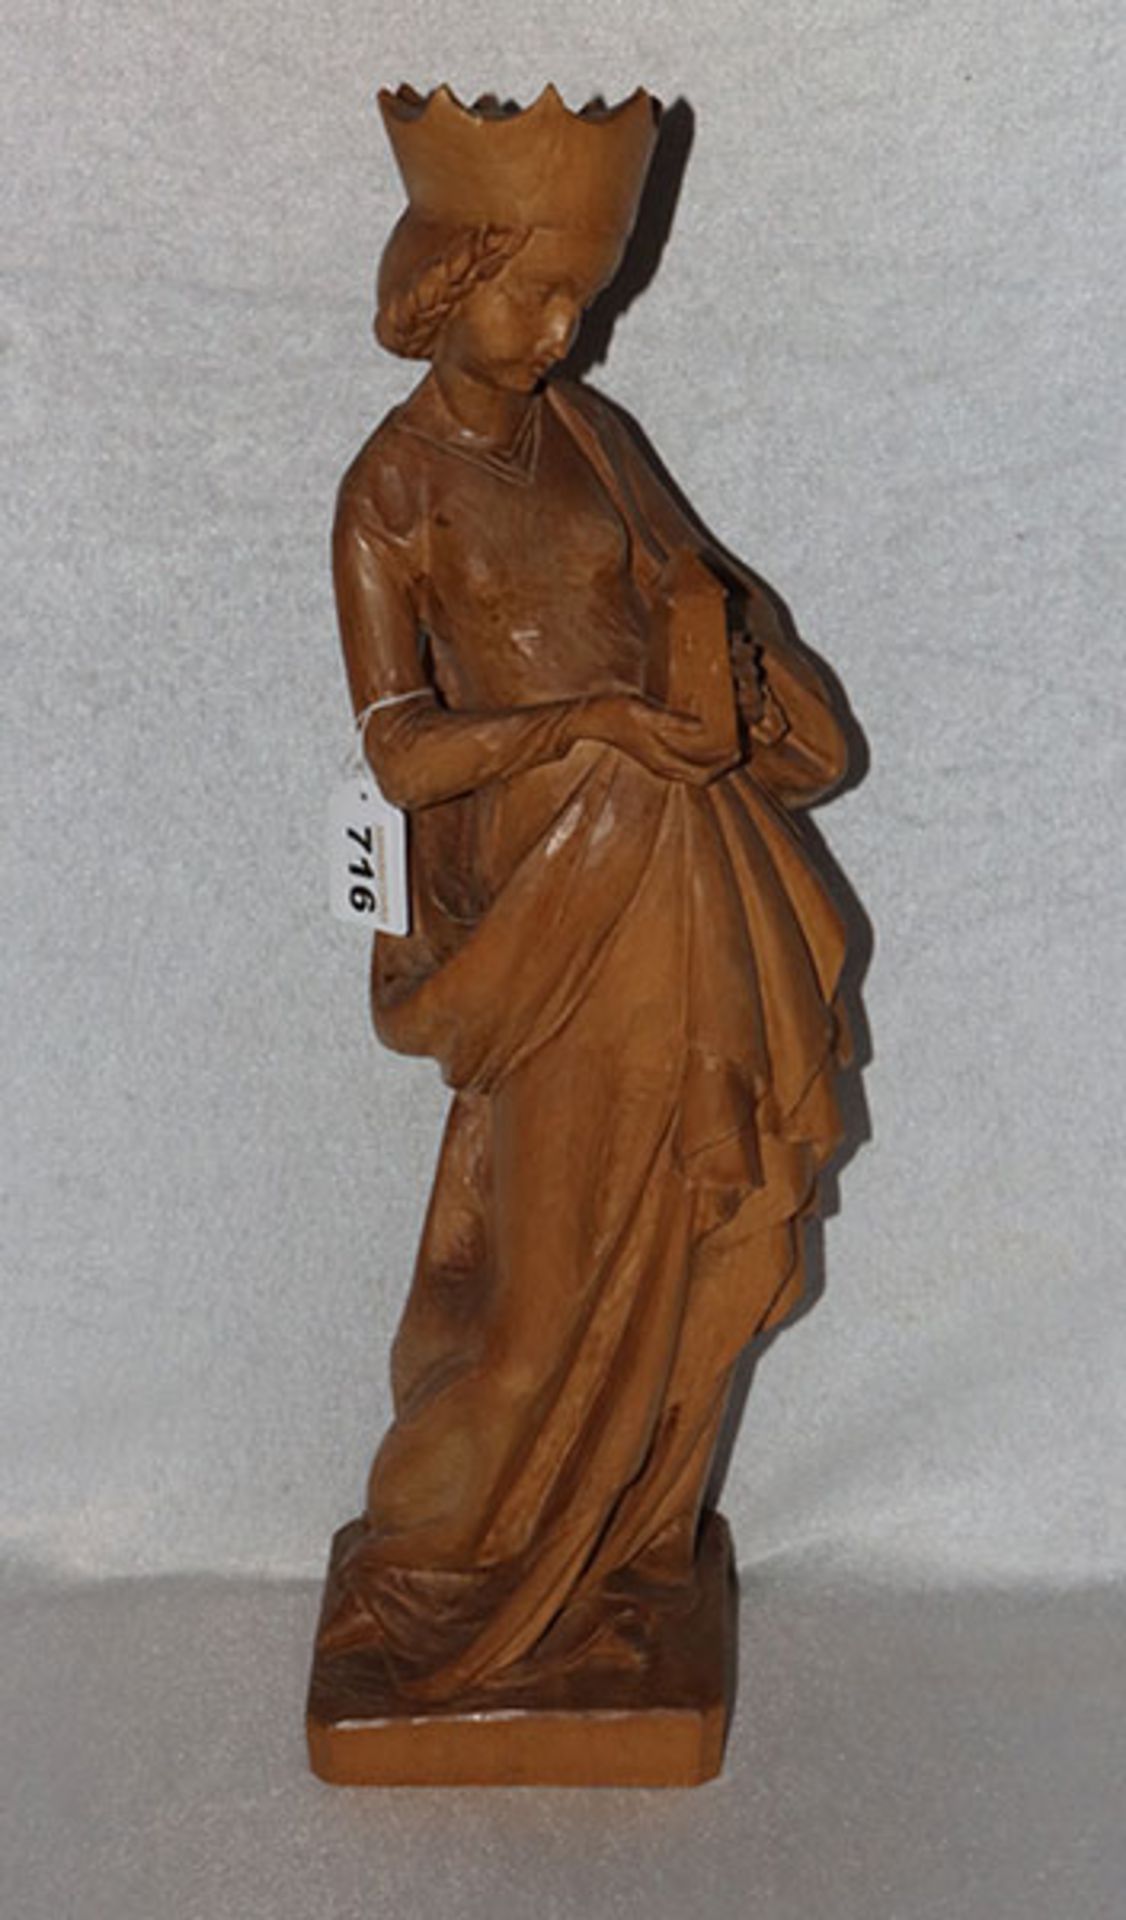 Holz Figurenskulptur 'Heilige Barbara', gebeizt, H 57 cm, leicht bestossen